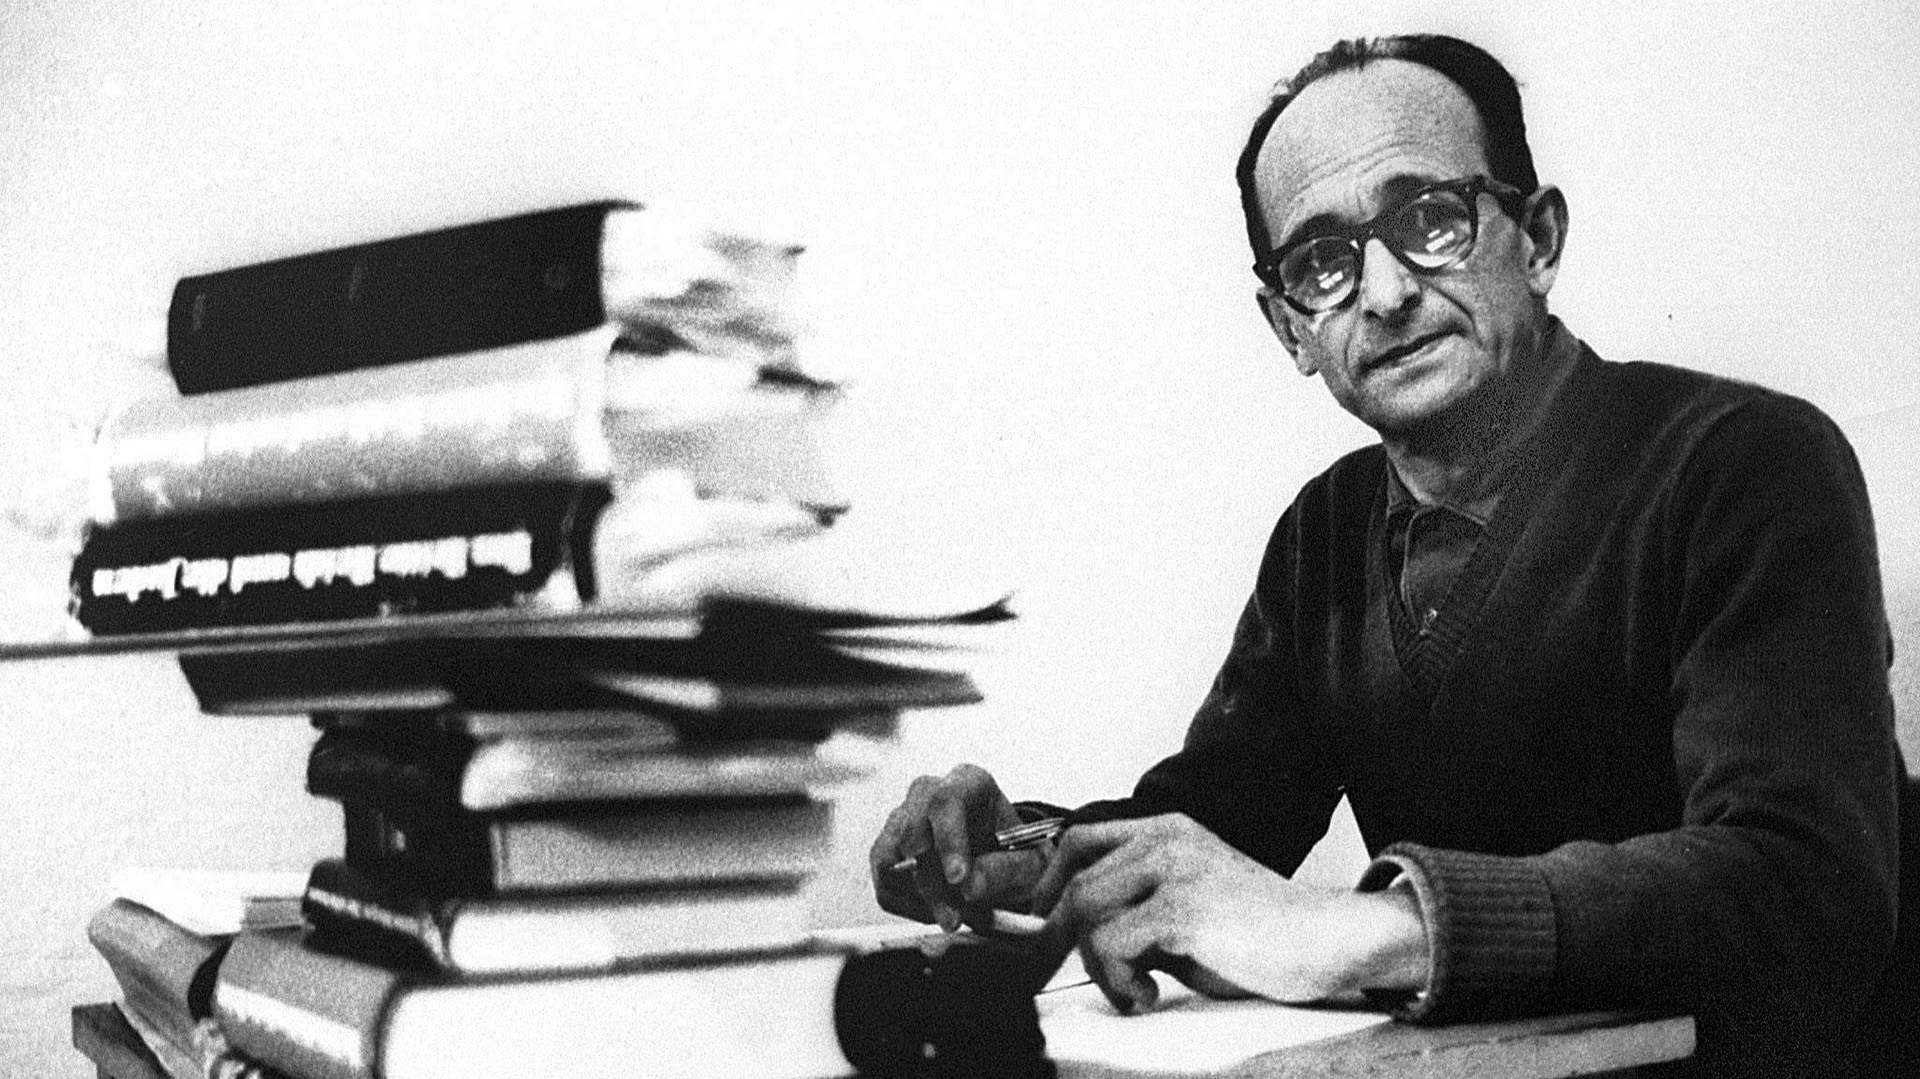 El 15 de diciembre de 1961 Adolf Eichmann fue condenado a morir en la horca por crímenes contra la Humanidad. Había vivido cerca de diez años en varias ciudades argentinas